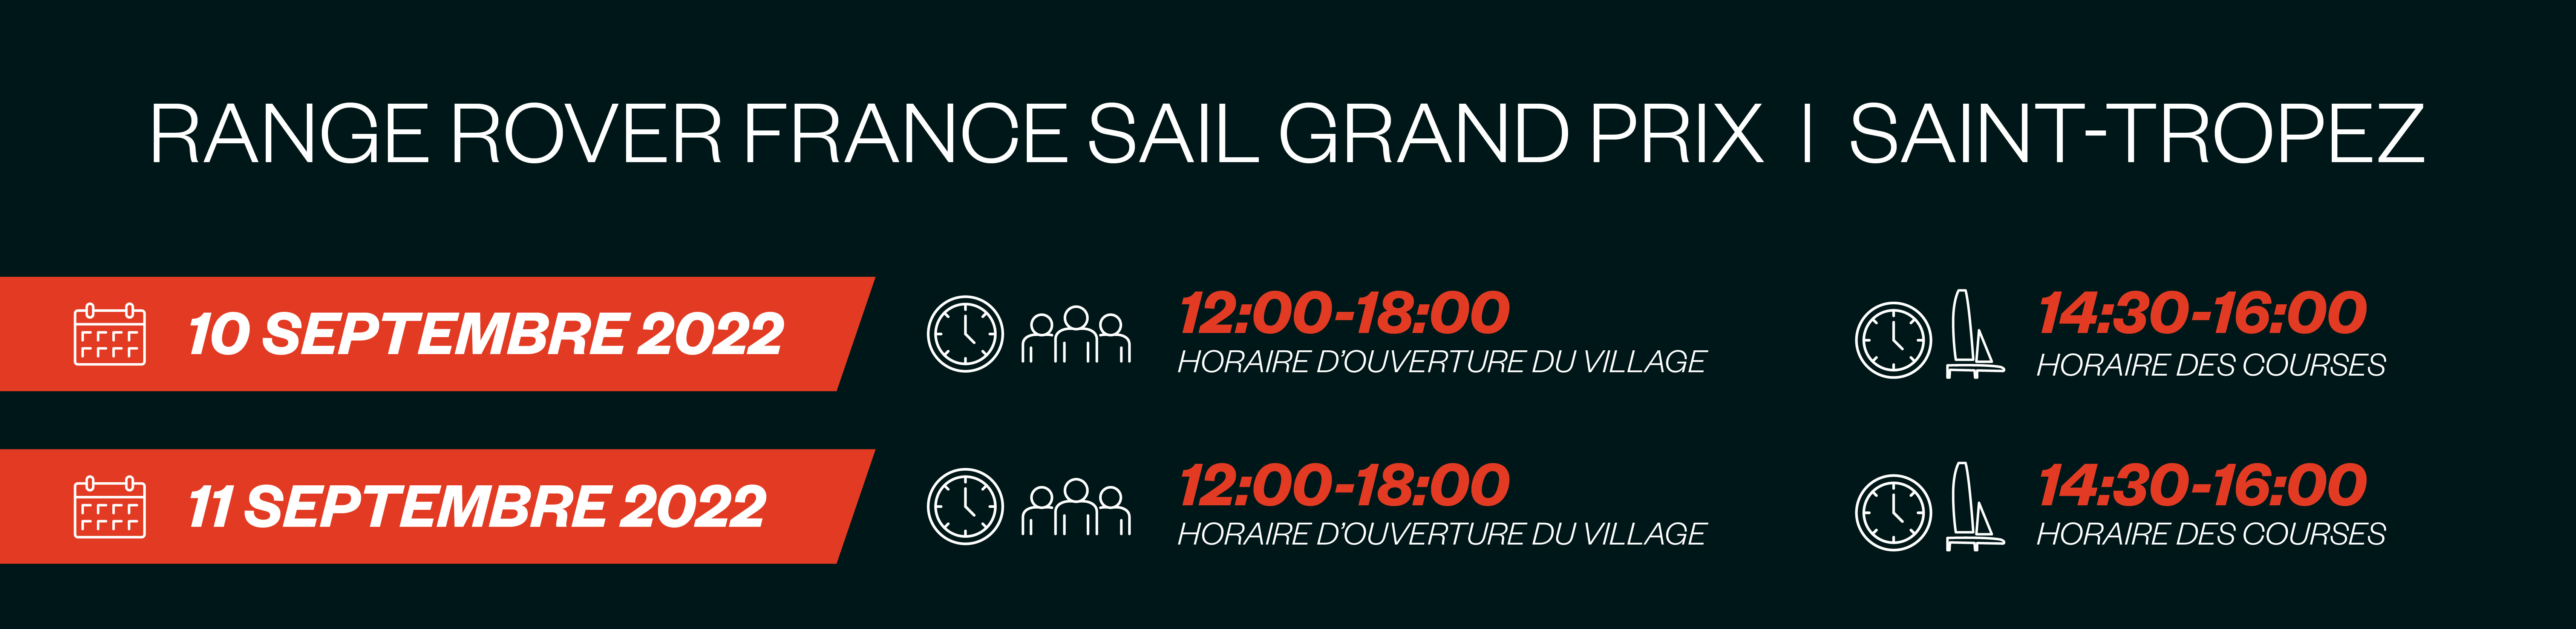 Season 3 // Range Rover France Sail Grand Prix // Race Time asset (French)